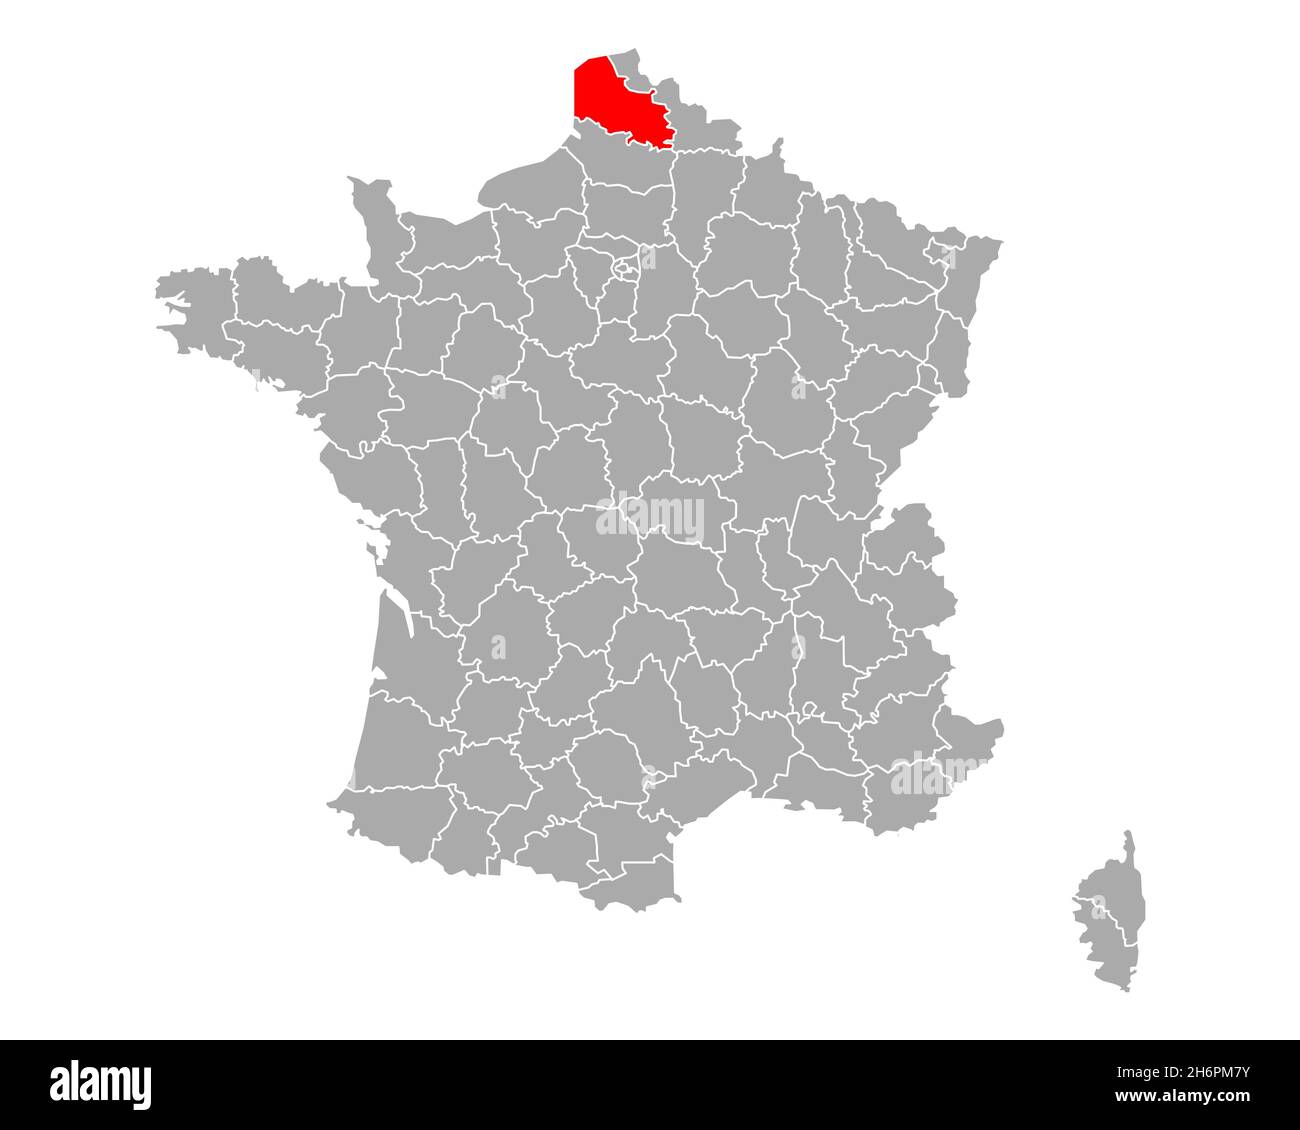 Map of Pas-de-Calais in France Stock Photo